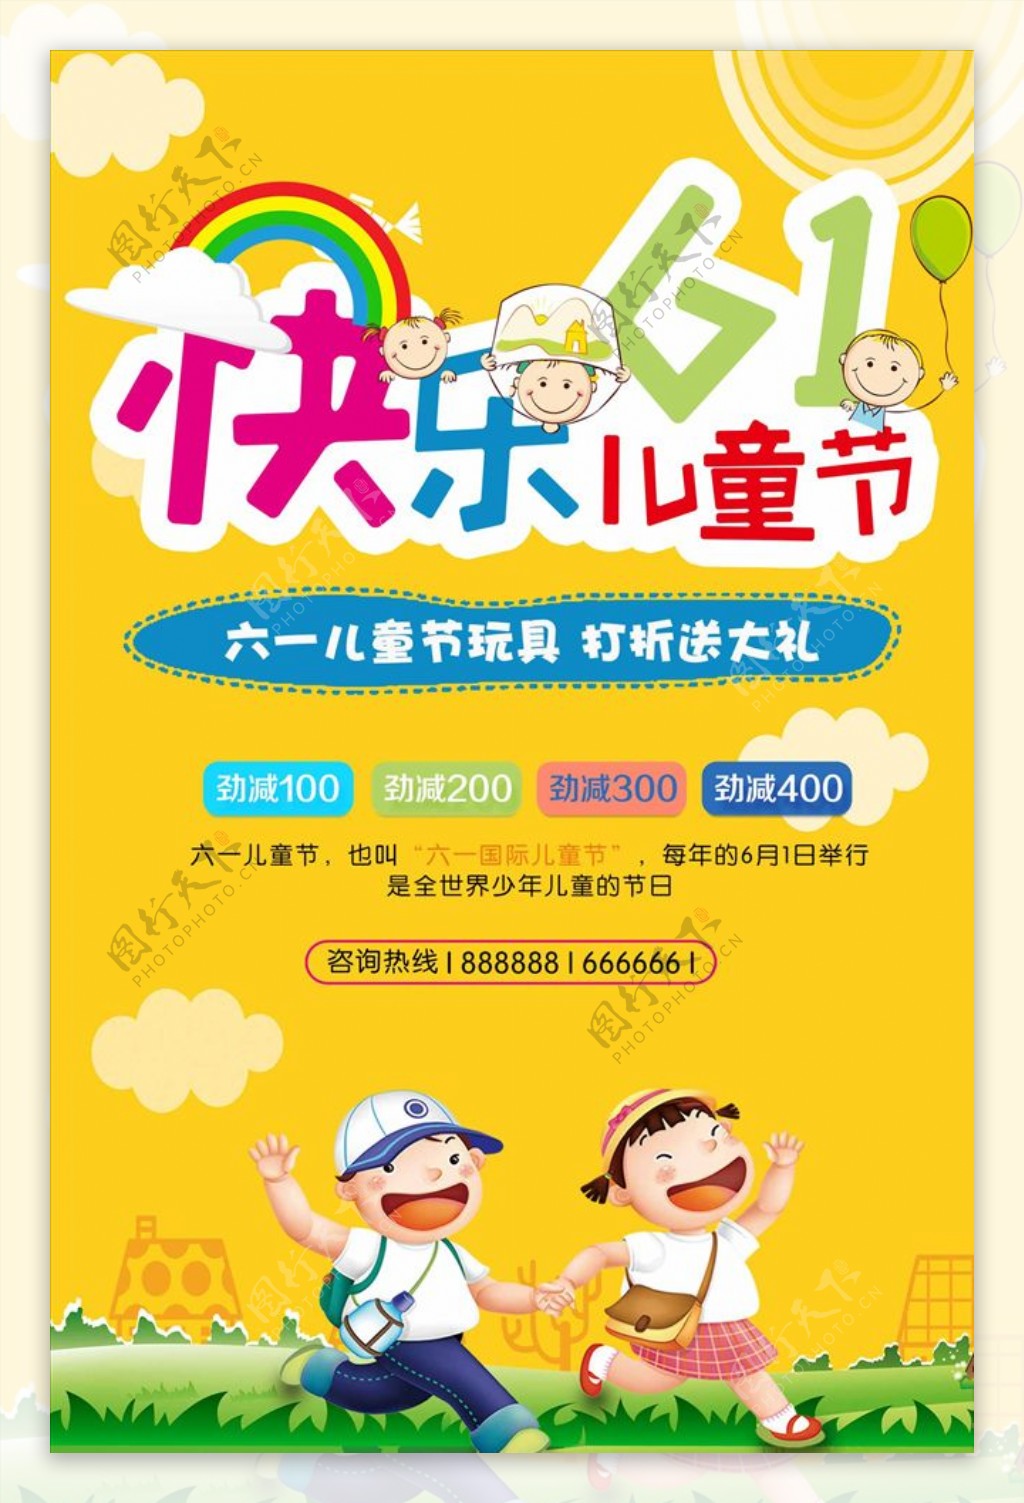 6.1儿童节节日宣传促销海报